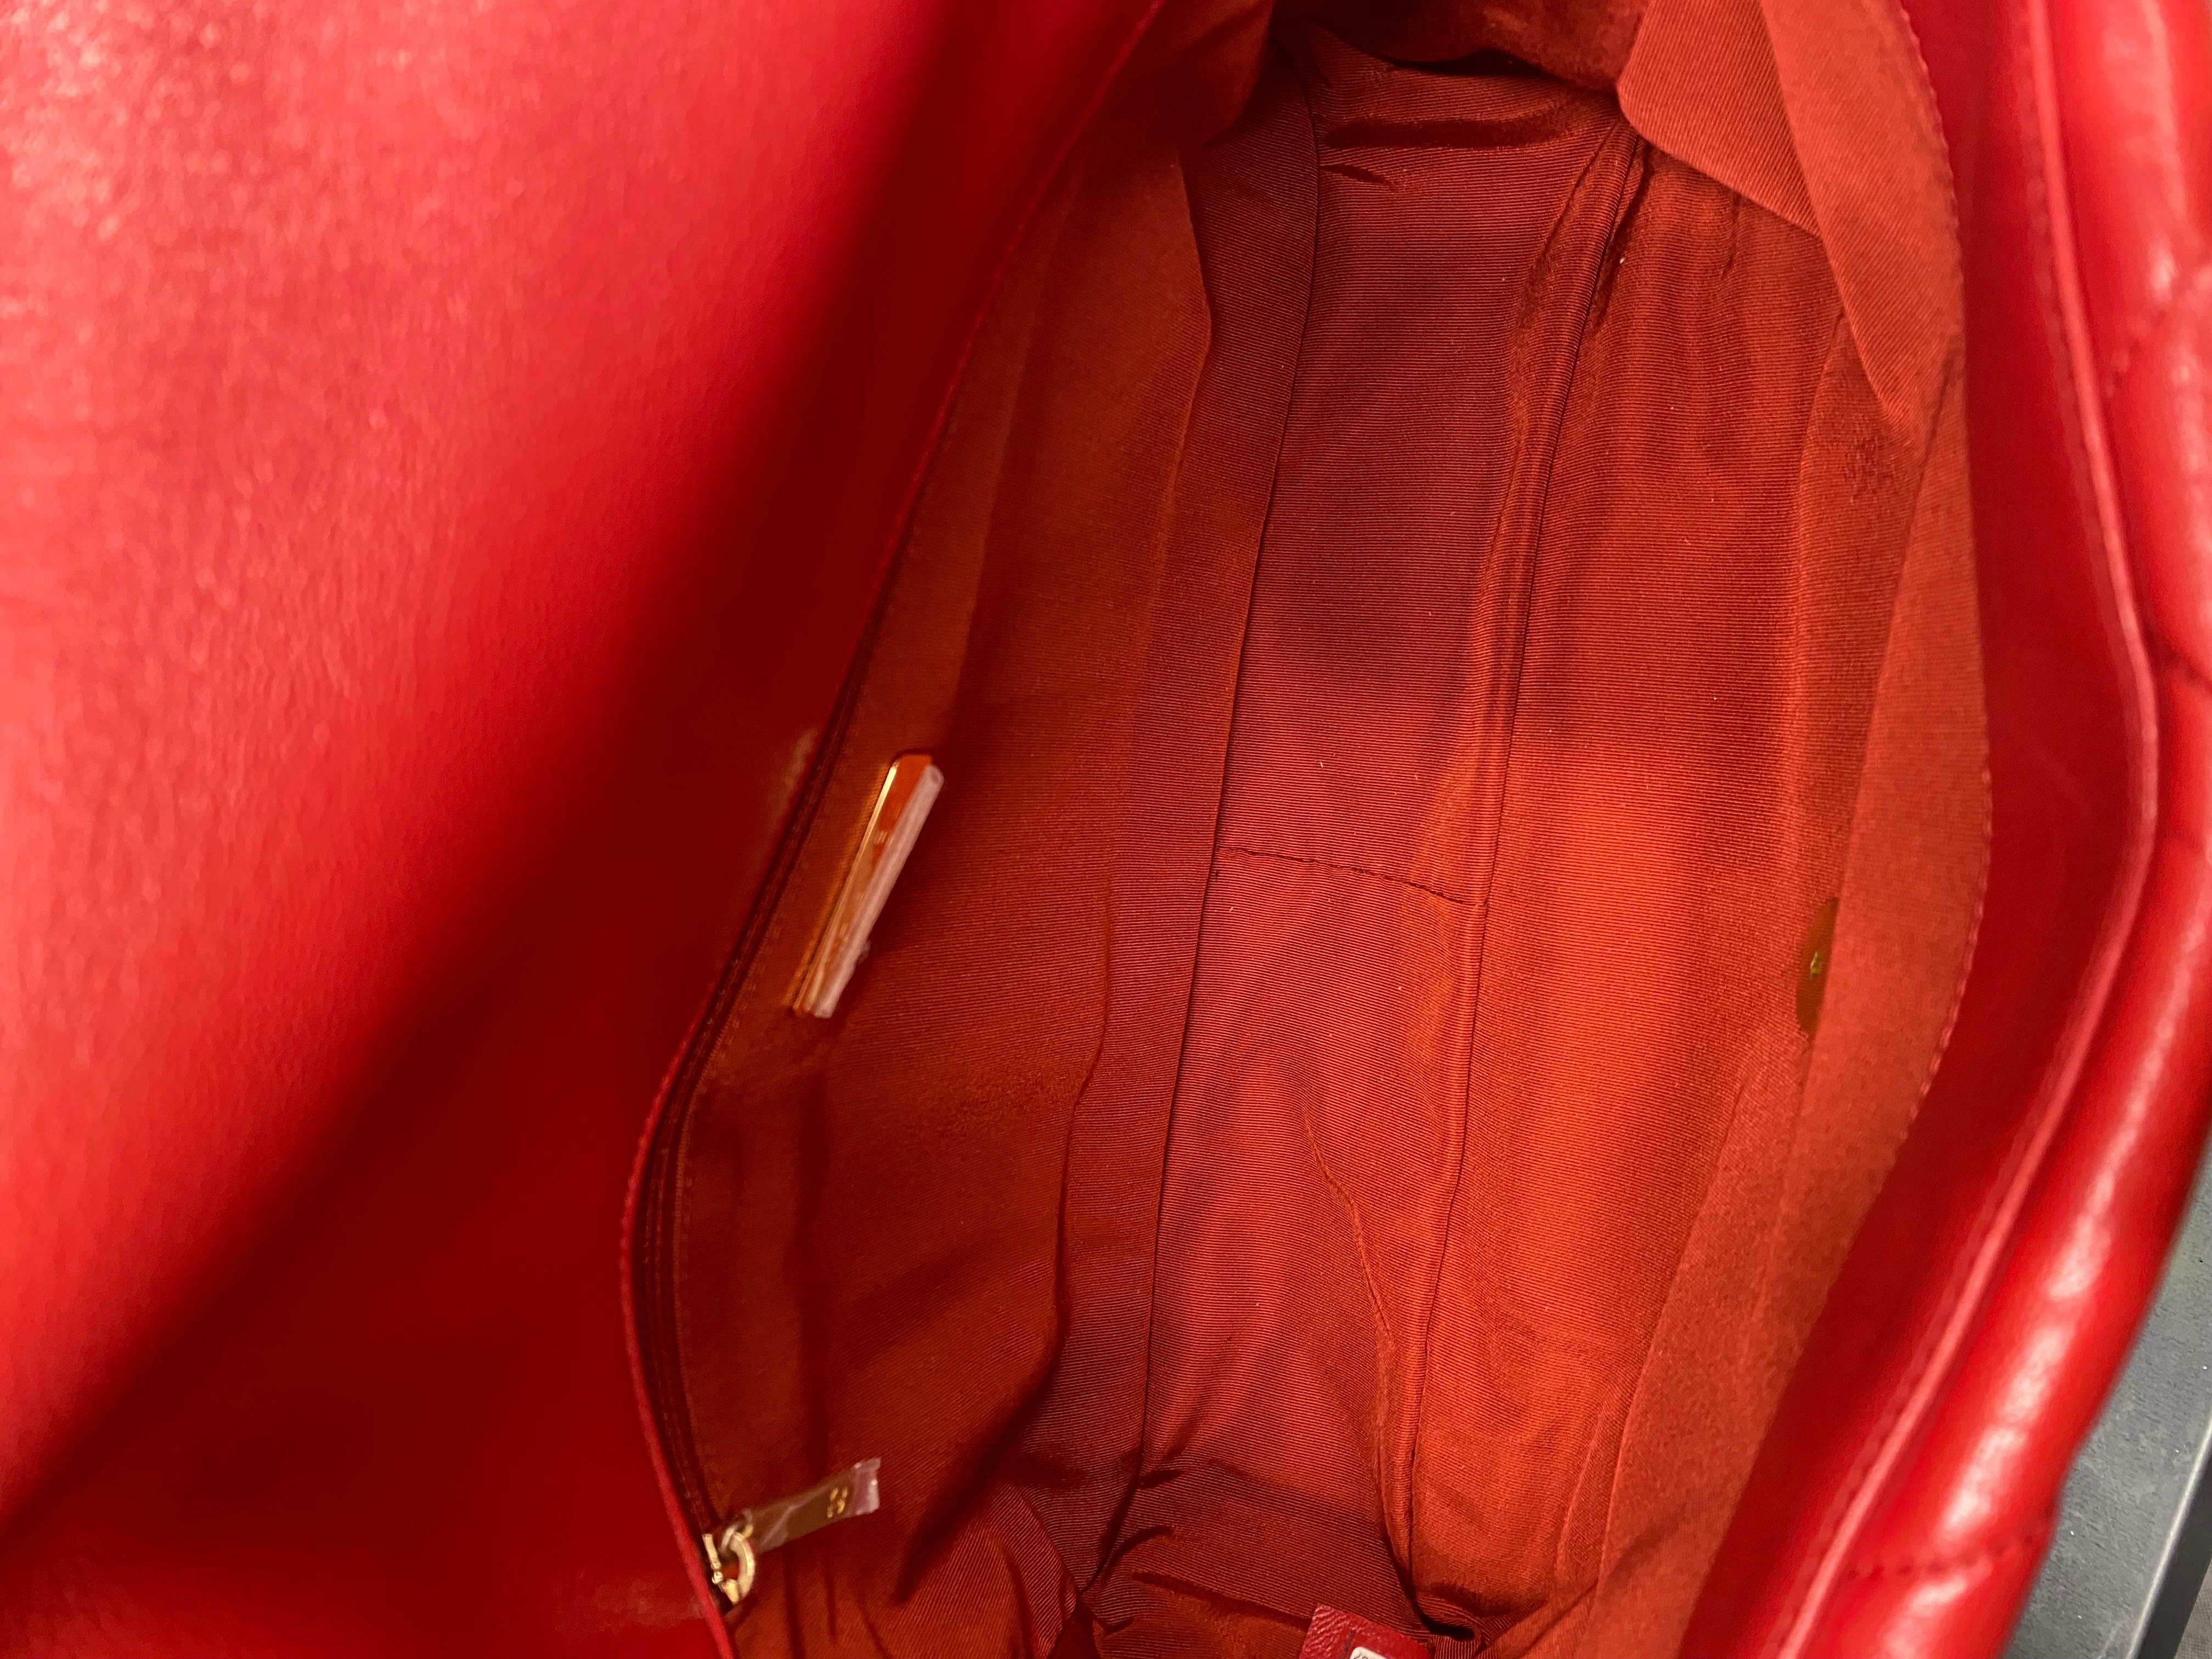 2019 Chanel 19 Red Shoulder Bag Big Size 3